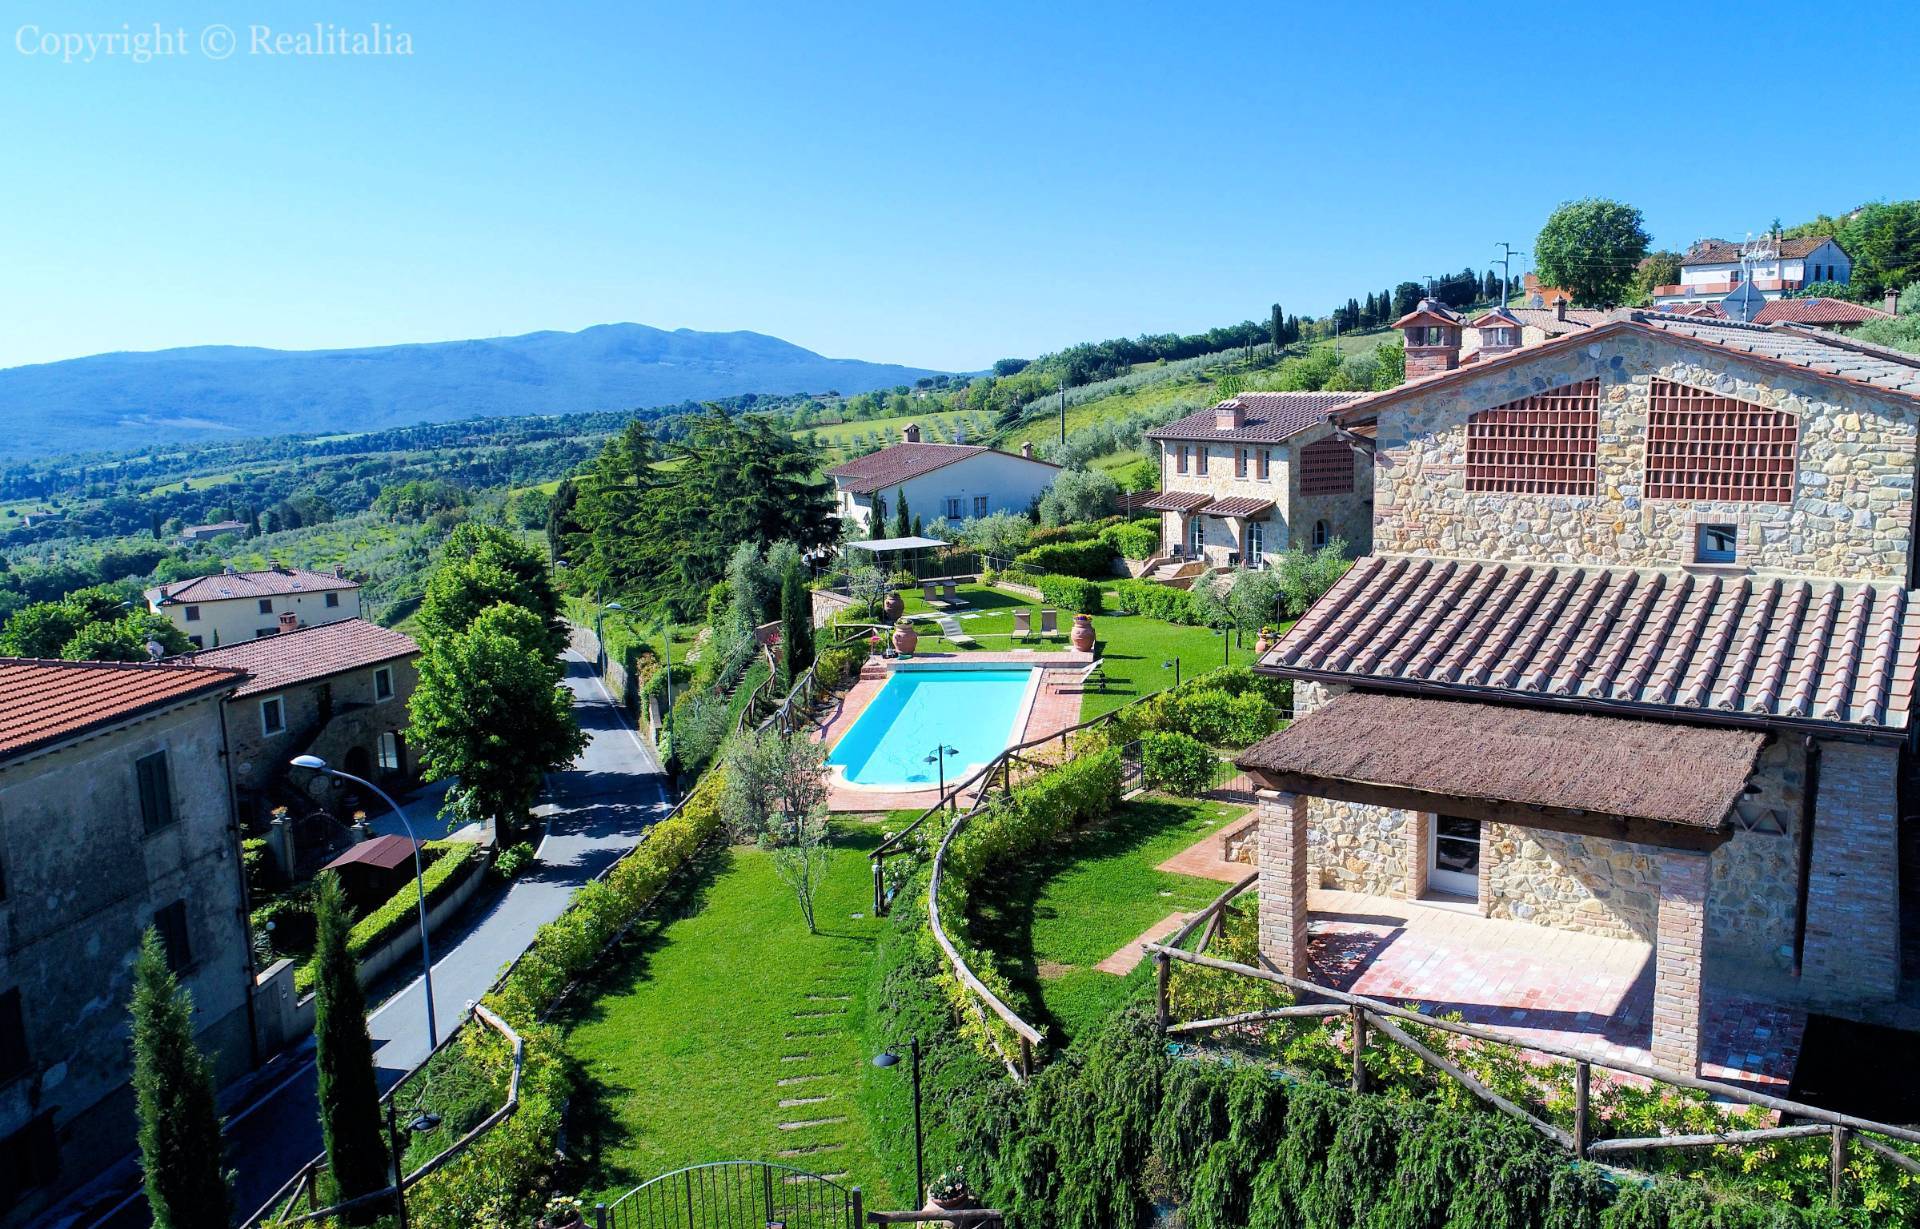 1292-Porzione terratetto di villa bifamiliare con giardino privato e piscina condominiale-Chianni-1 Agenzia Immobiliare ASIP